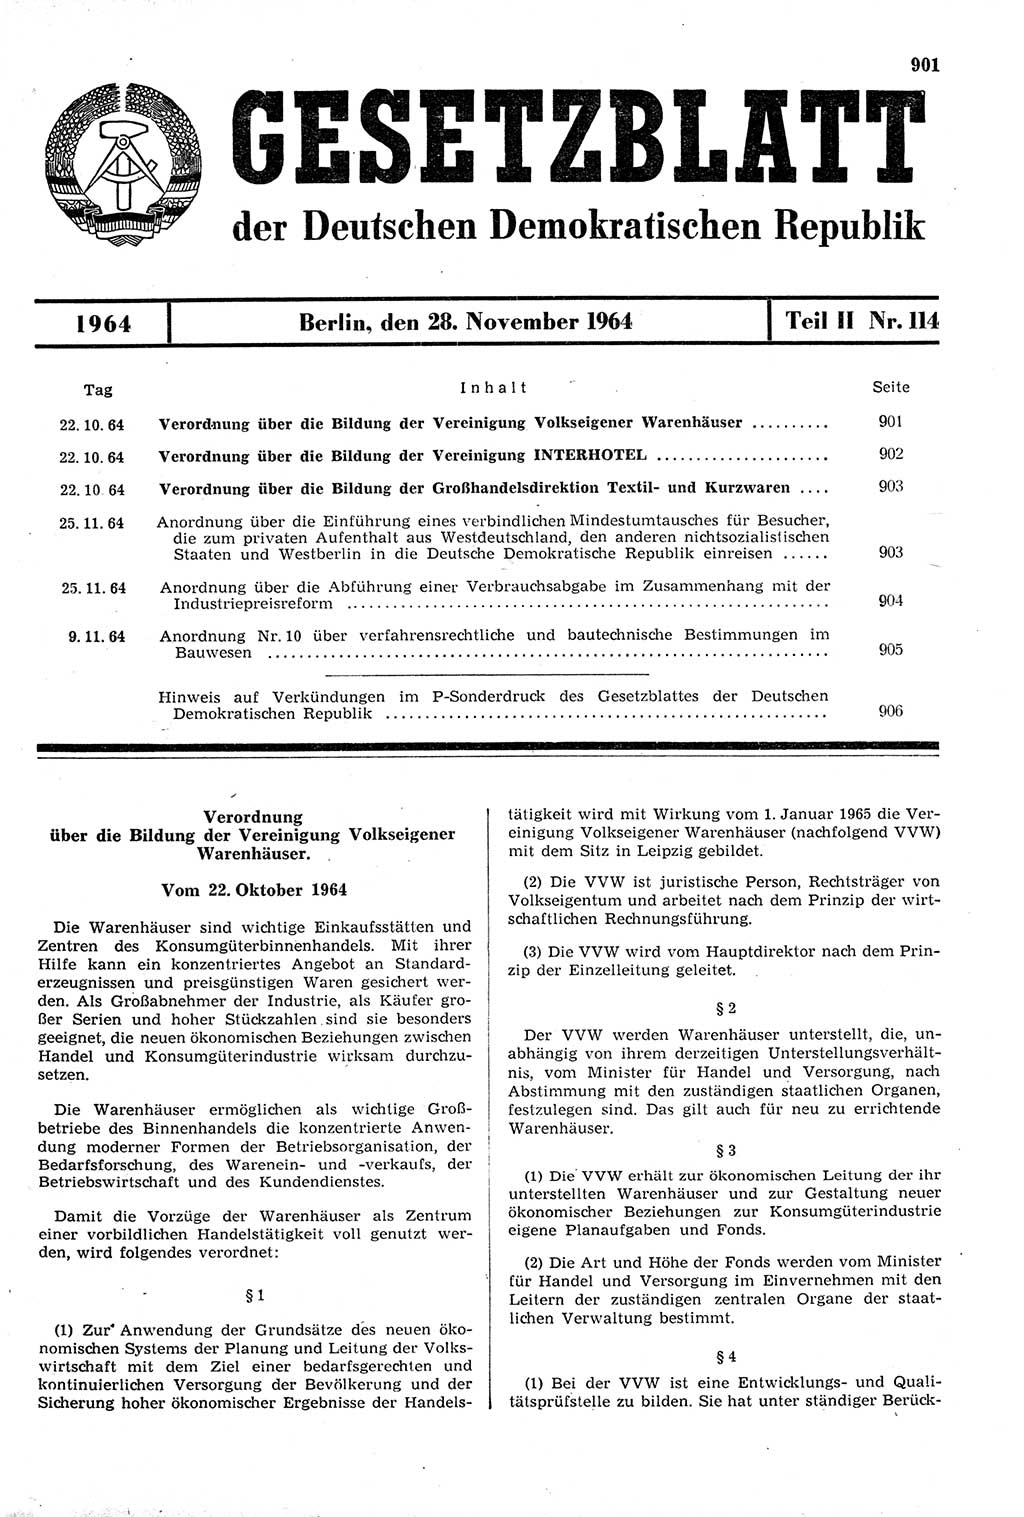 Gesetzblatt (GBl.) der Deutschen Demokratischen Republik (DDR) Teil ⅠⅠ 1964, Seite 901 (GBl. DDR ⅠⅠ 1964, S. 901)